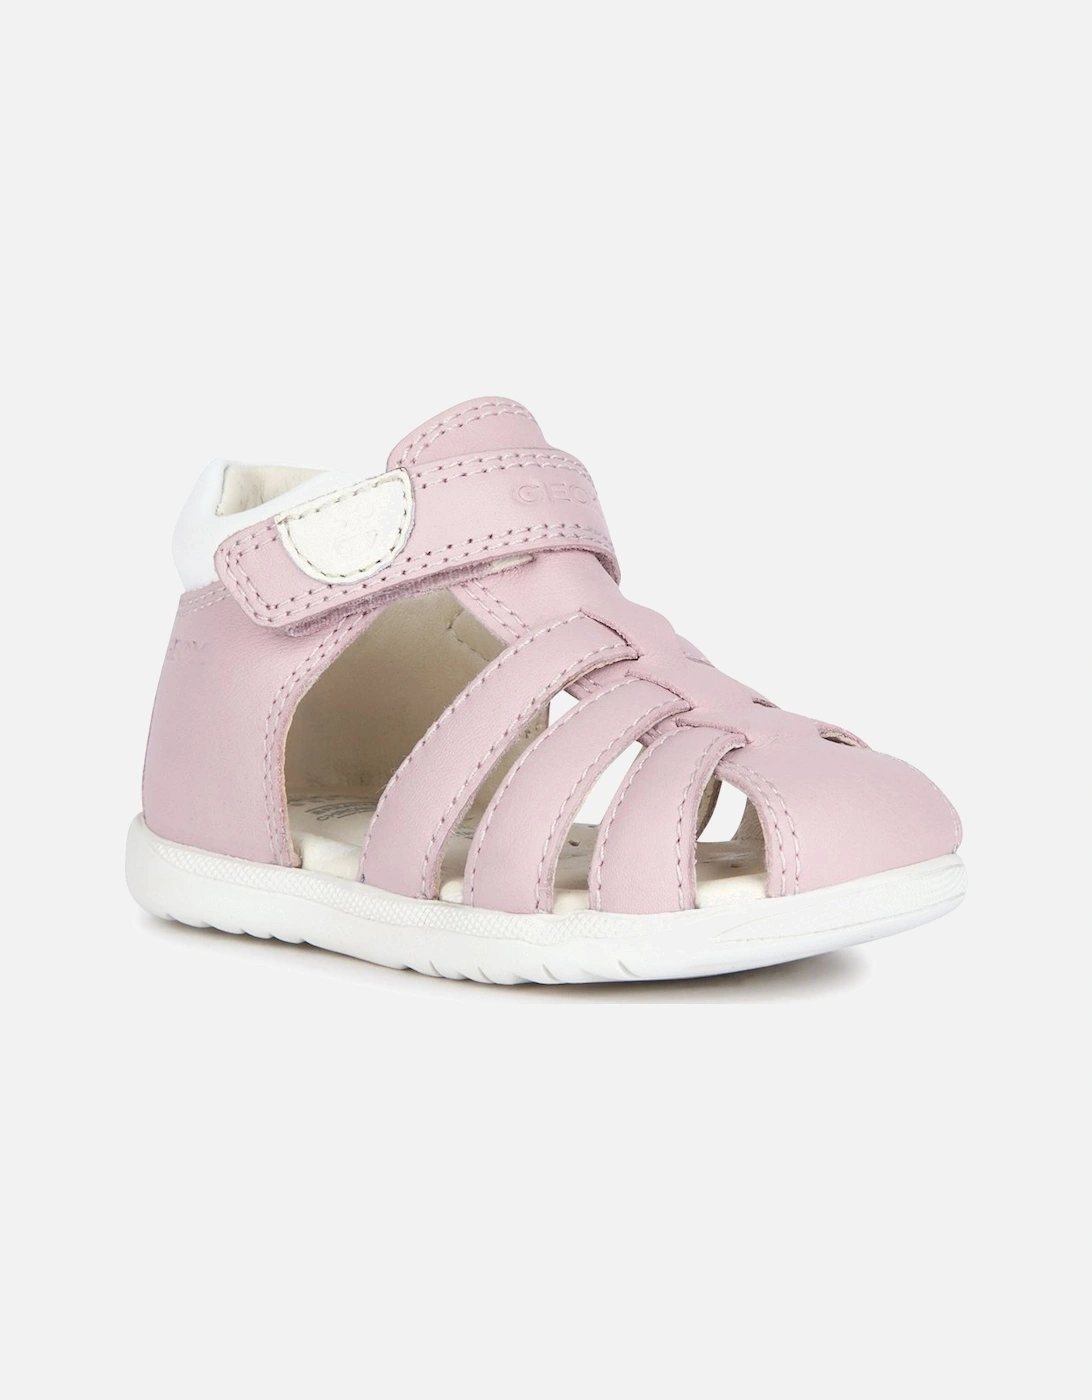 B Macchia Girls Infant Sandals, 7 of 6